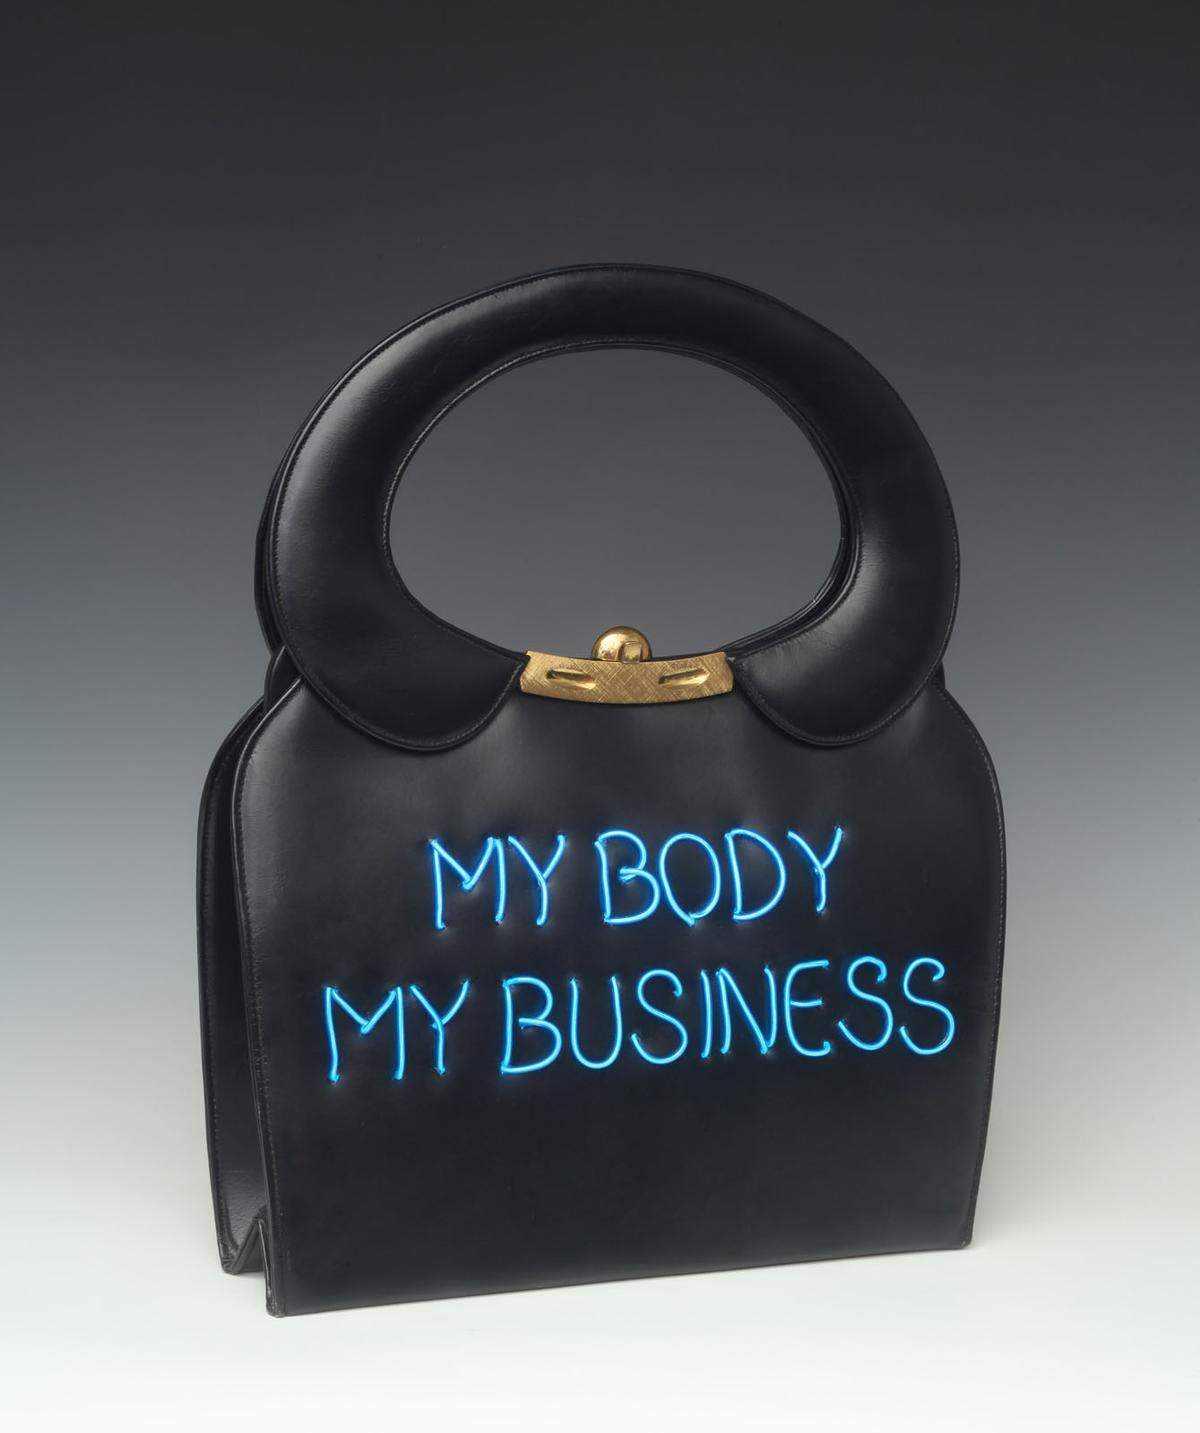 Handtasche mit der Aufschrift "My Body My Business" von Michele Pred, 2019. Nähere Informationen auf: www.vam.ac.uk/exhibitions/bags